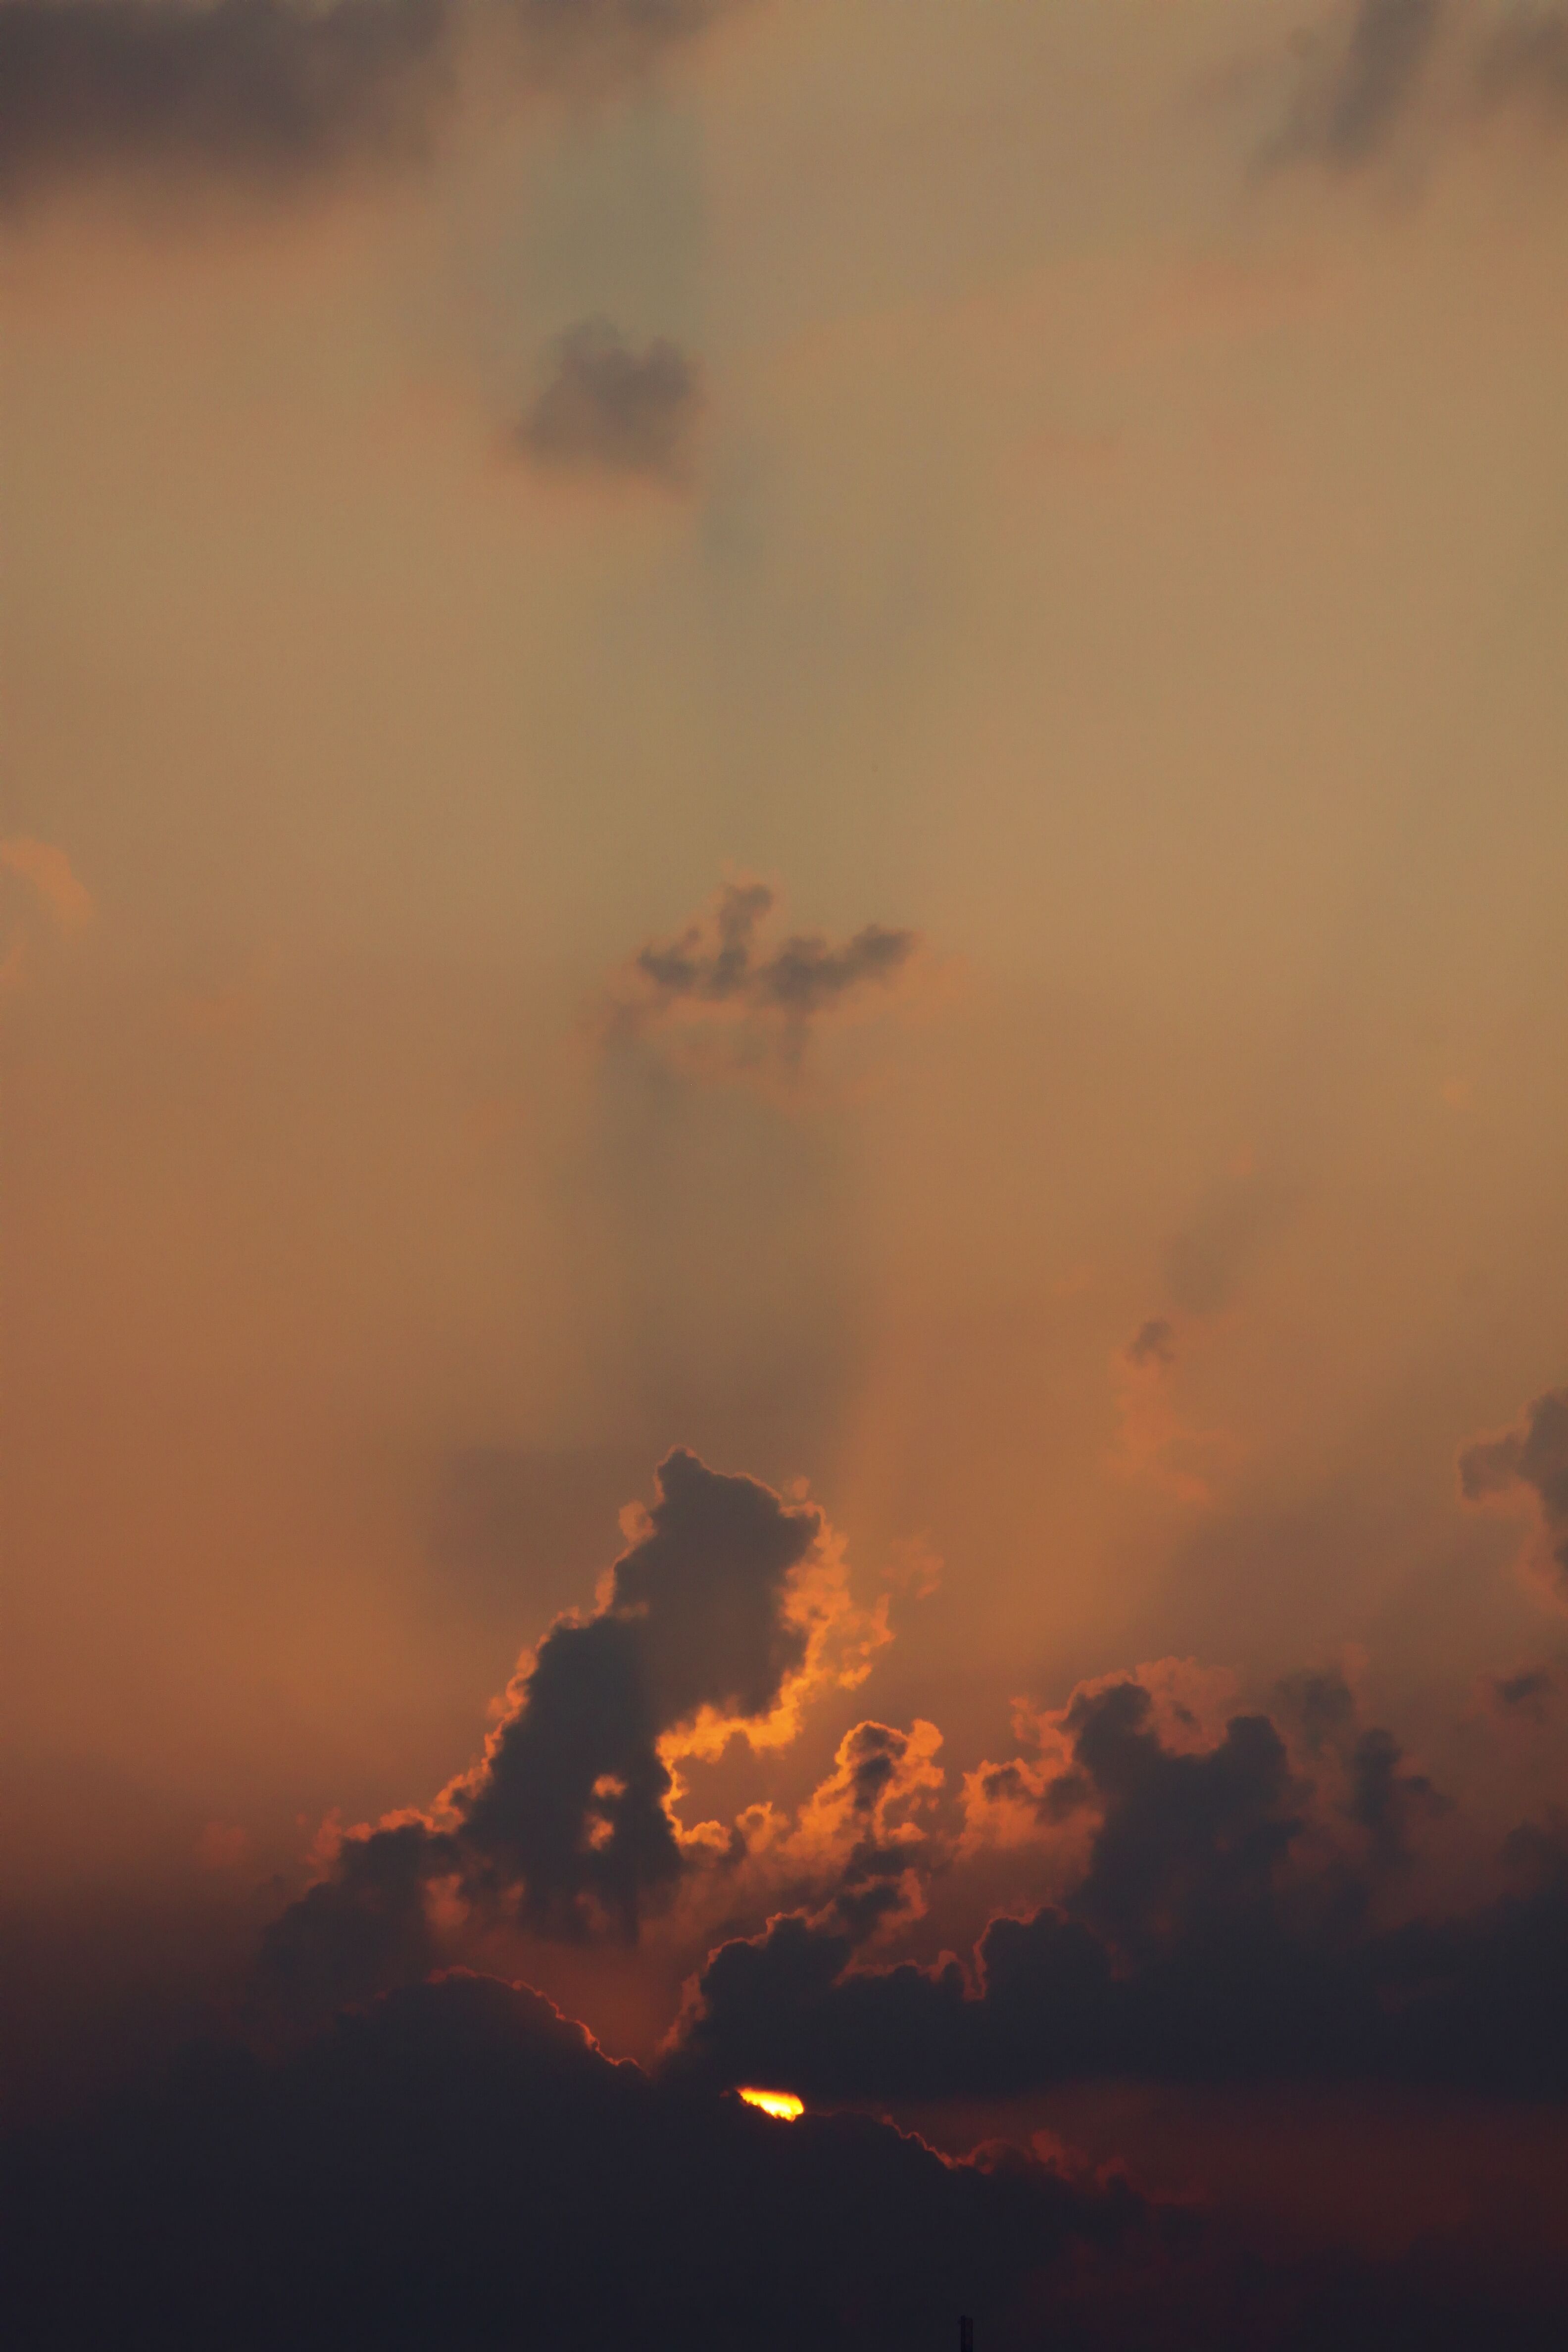 郑州现丁达尔效应奇观 天空云彩形态多变绚丽异彩